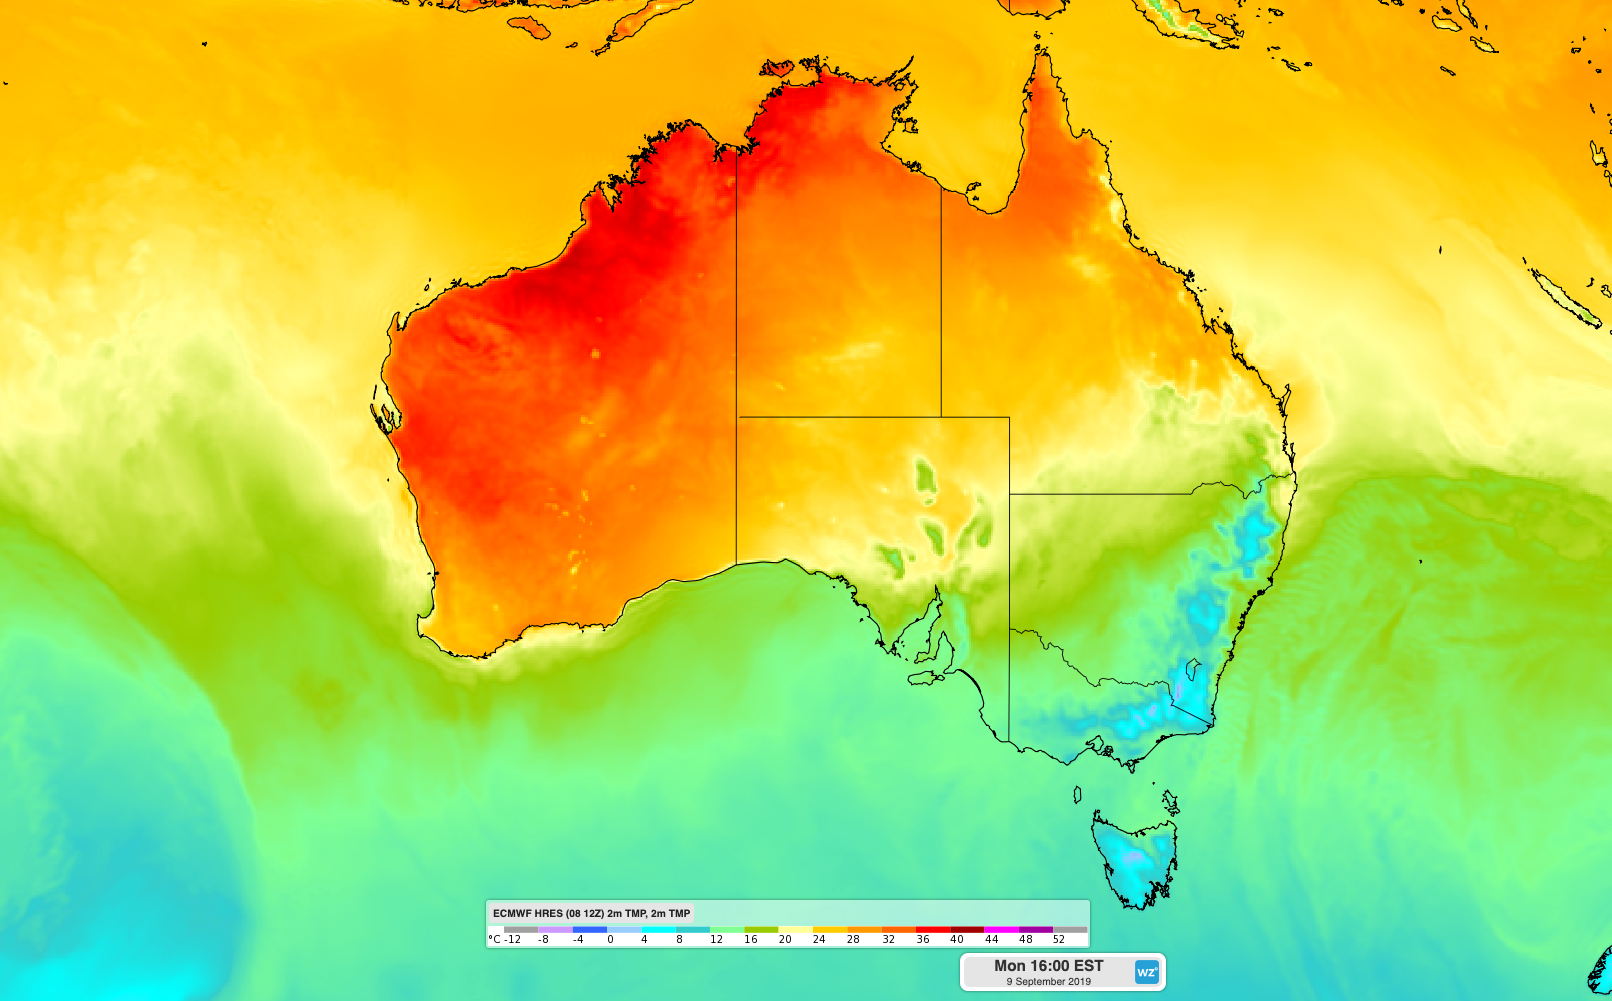 Record early-season heat in Perth